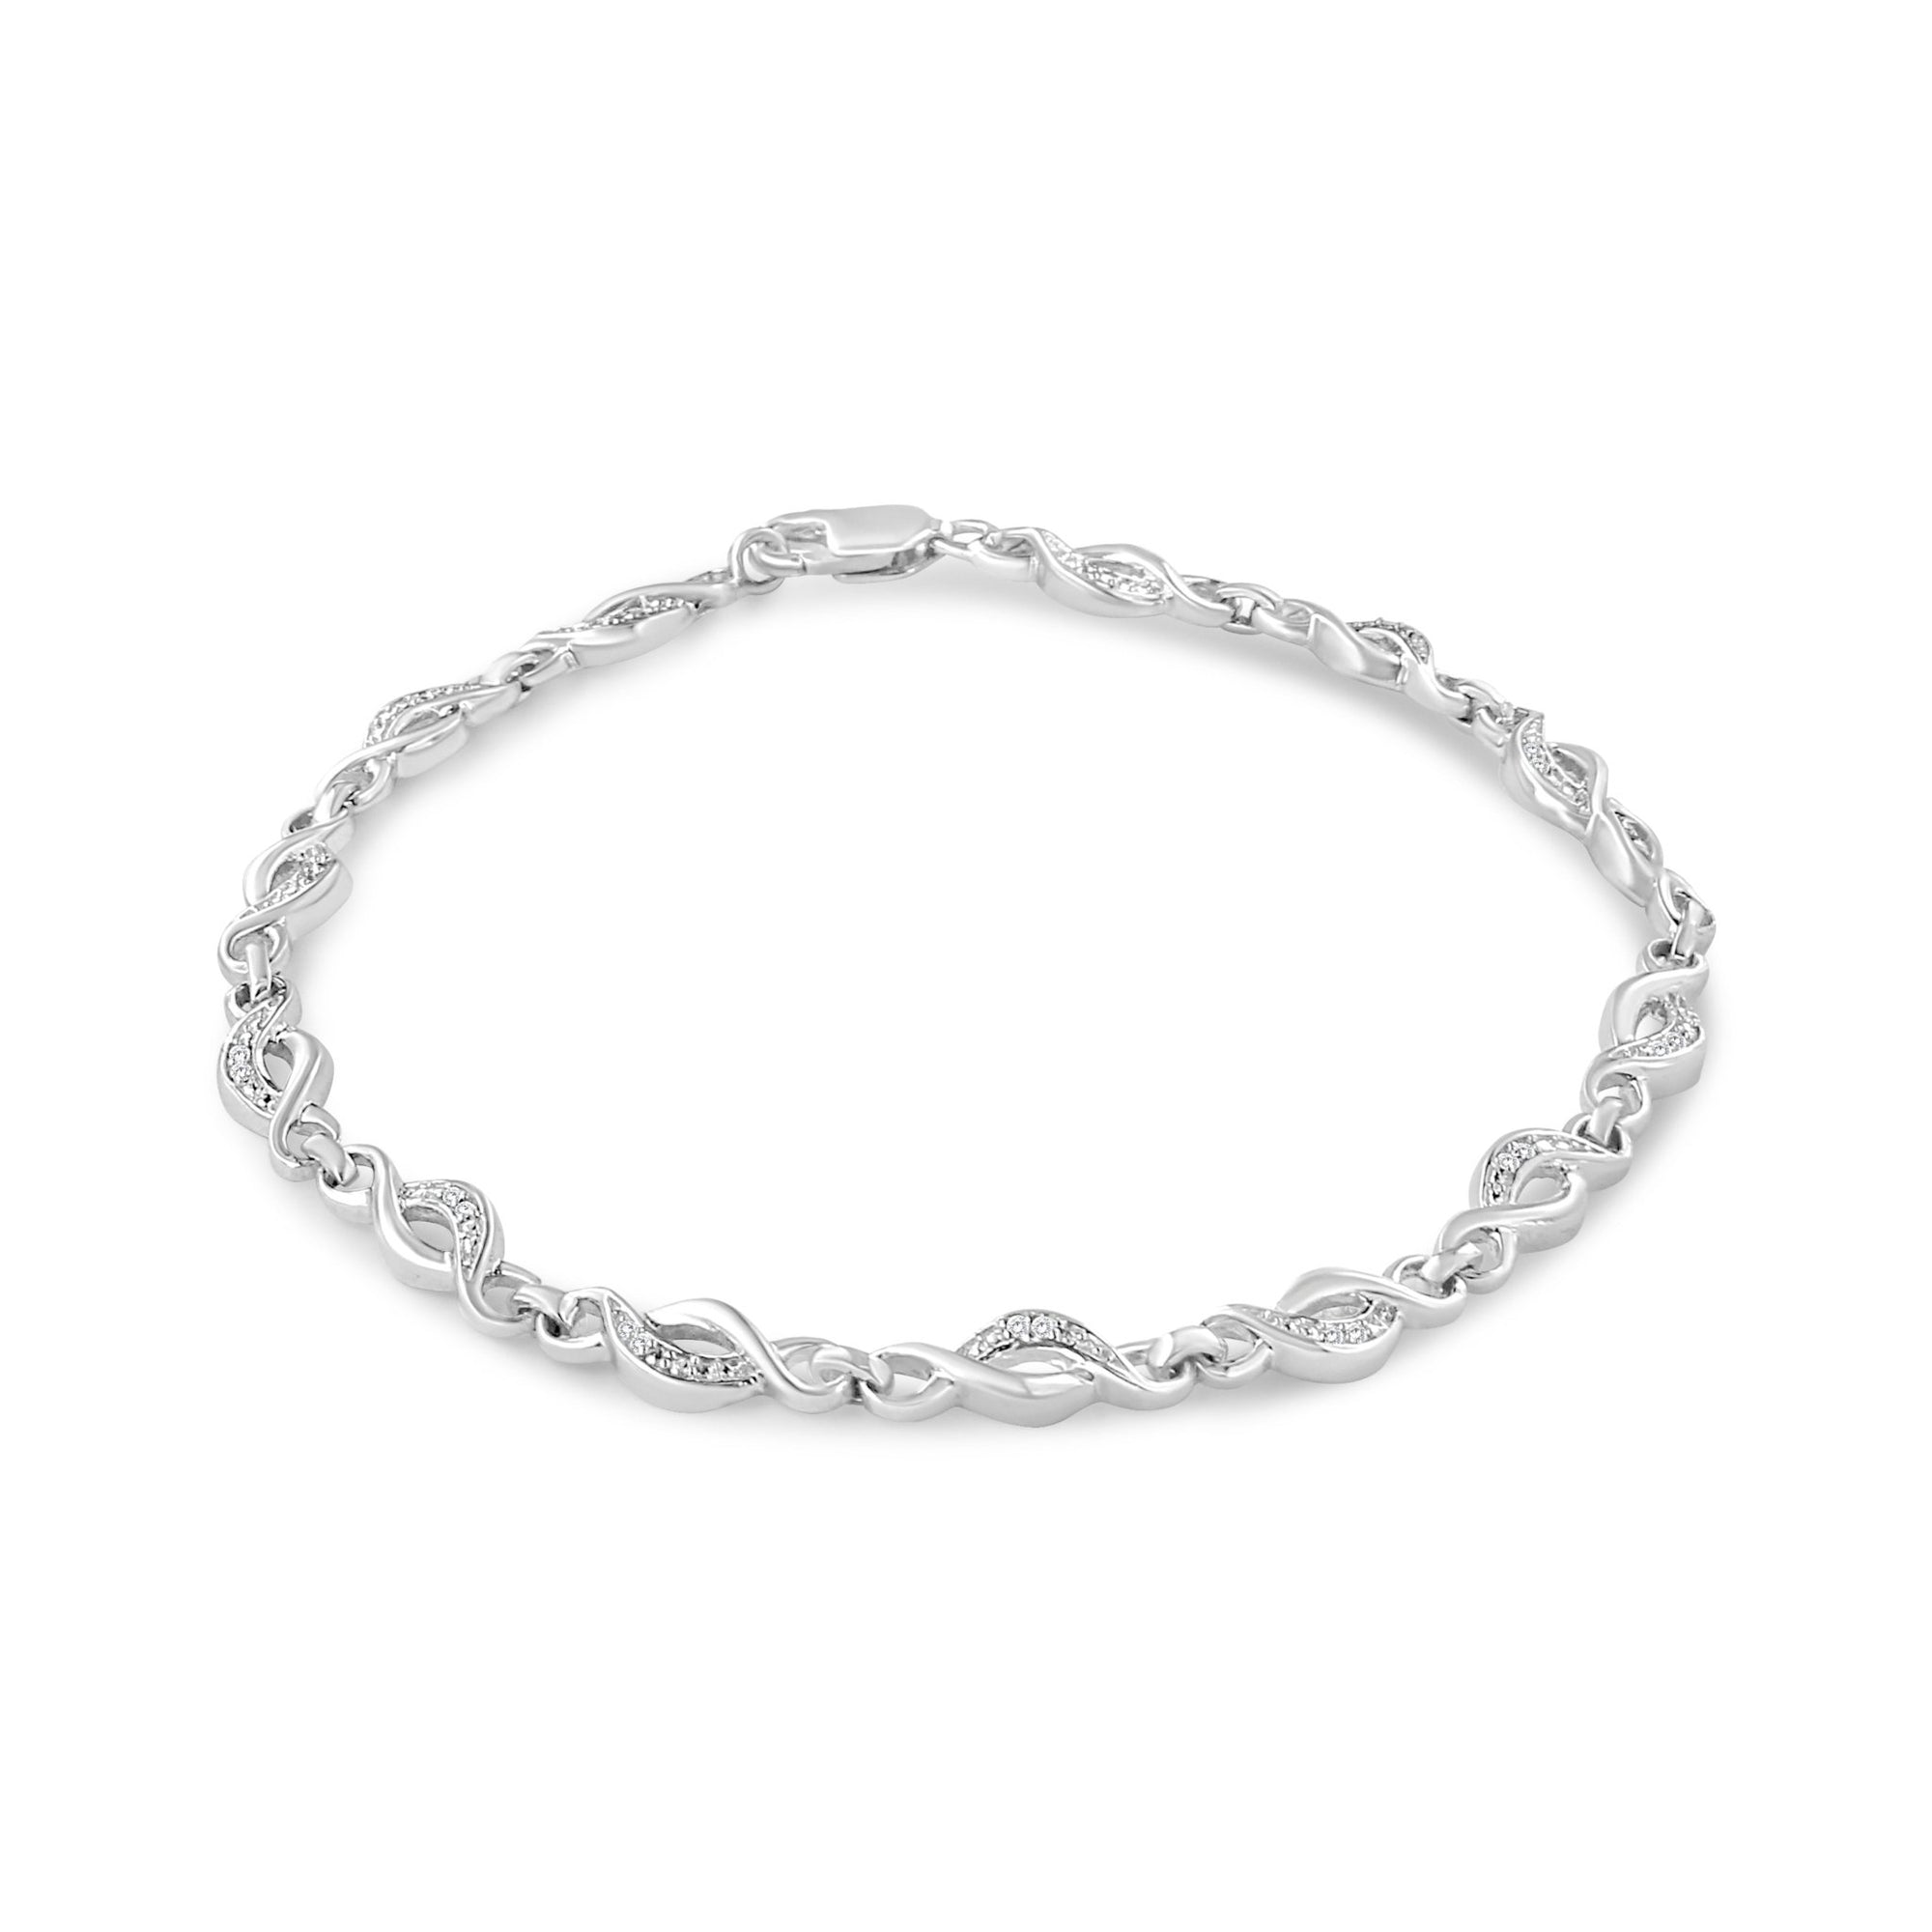 .925 Sterling Silver Prong Set Diamond Accent Curved Spiral Link Bracelet (I-J Color, I3 Clarity) - 7.25" - LinkagejewelrydesignLinkagejewelrydesign